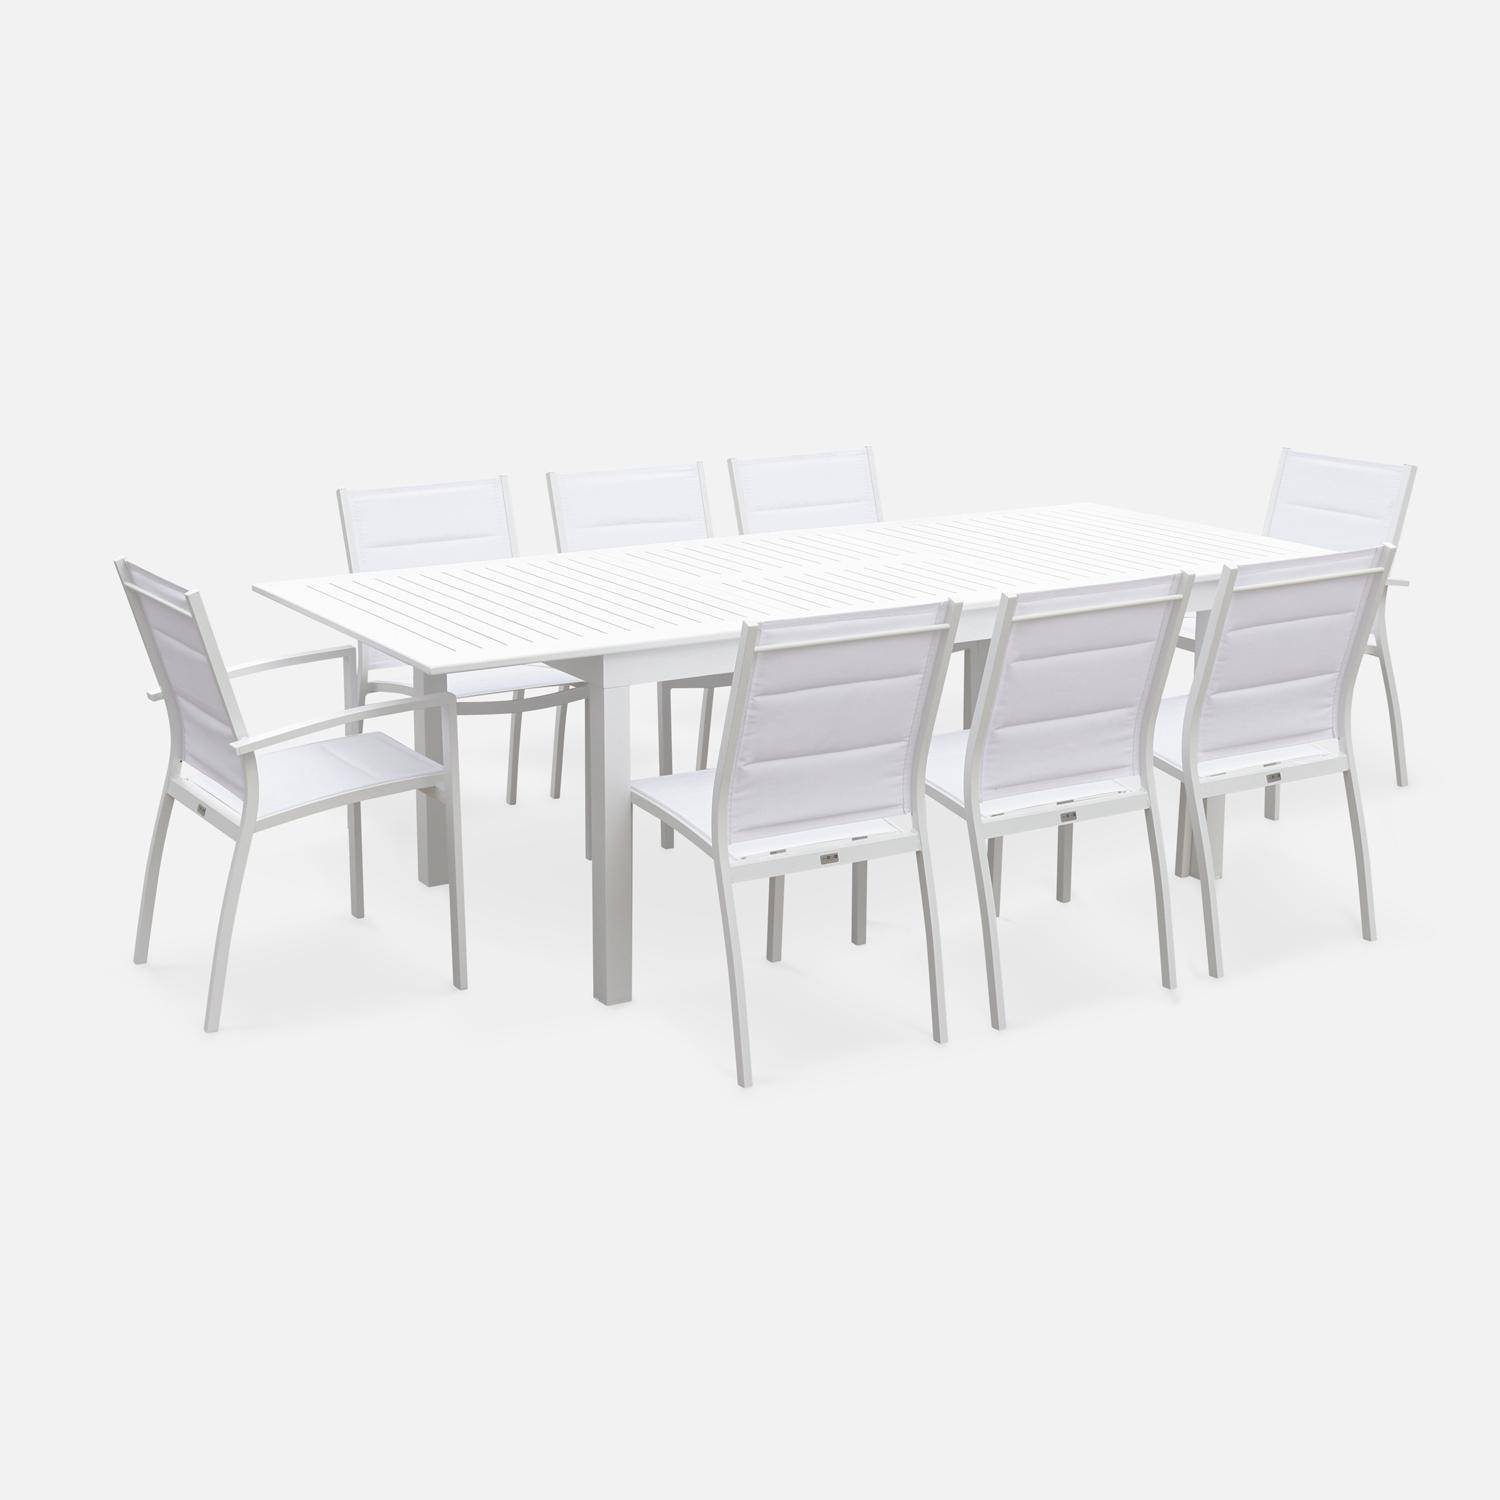 Set da giardino - modello: Chicago, colore: Bianco - Tavolo allungabile in alluminio, dimensioni: 175/245cm con prolunga e 8 sedute in textilene Photo4